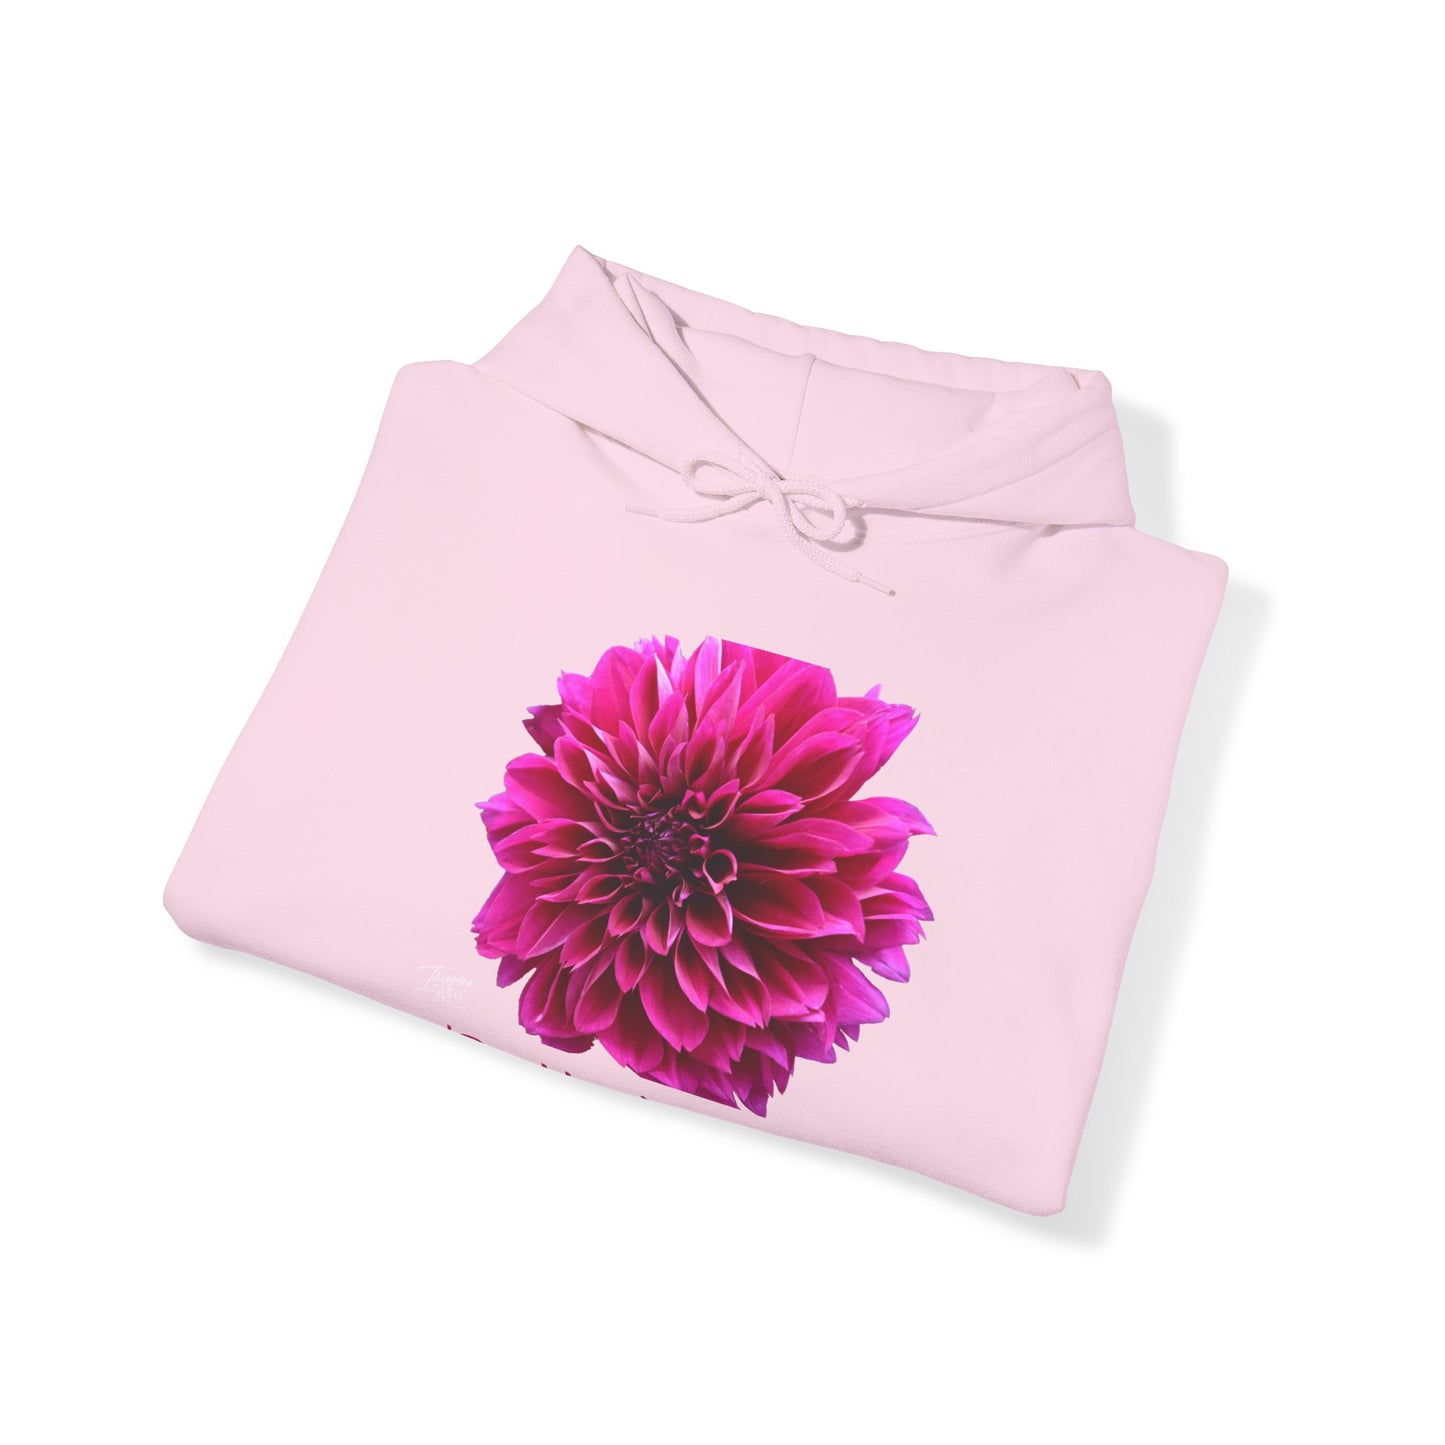 ‘Pretty in Pink’ Copenhagen, Denmark  - Unisex Heavy Blend™ Hooded Sweatshirt